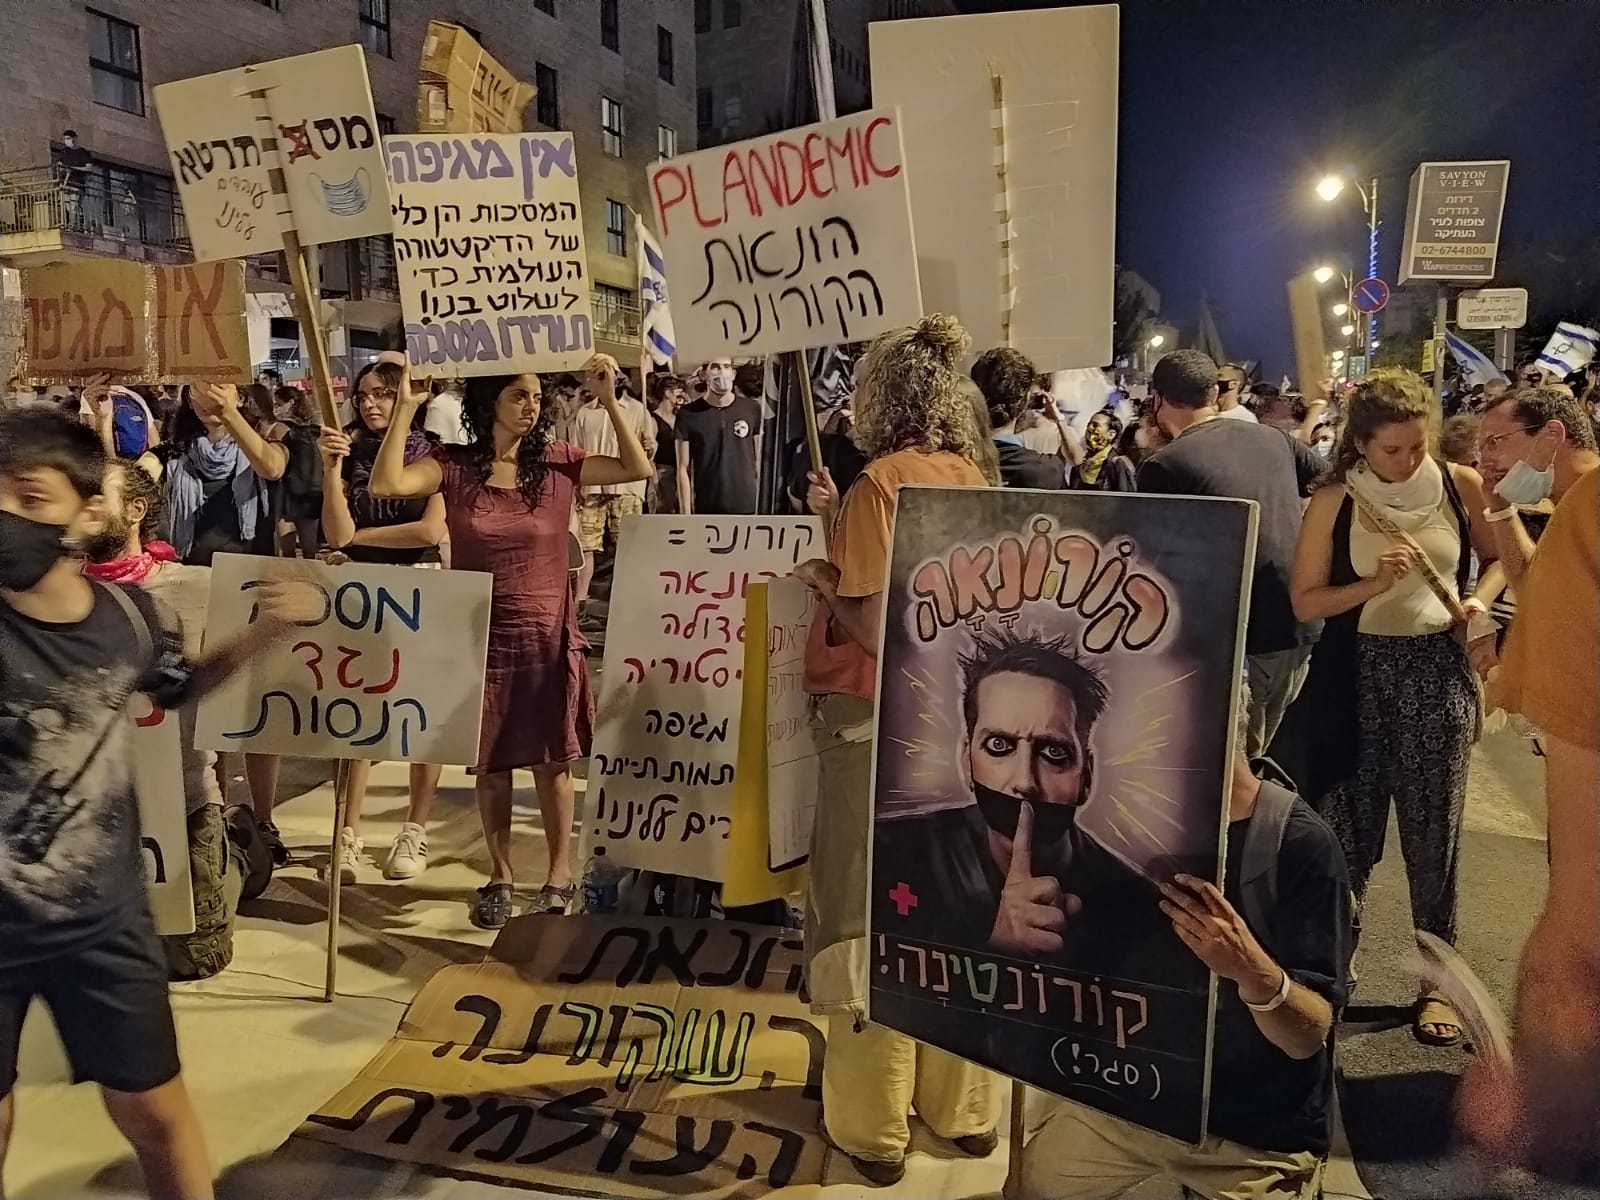 מפגינים נושאים שלטים נגד 'הונאת הקורונה' בהפגנה נגד מדיניות הממשלה בכיכר פריז בירושלים, 15 באוגוסט 2020 (צילום: יהל פרג')